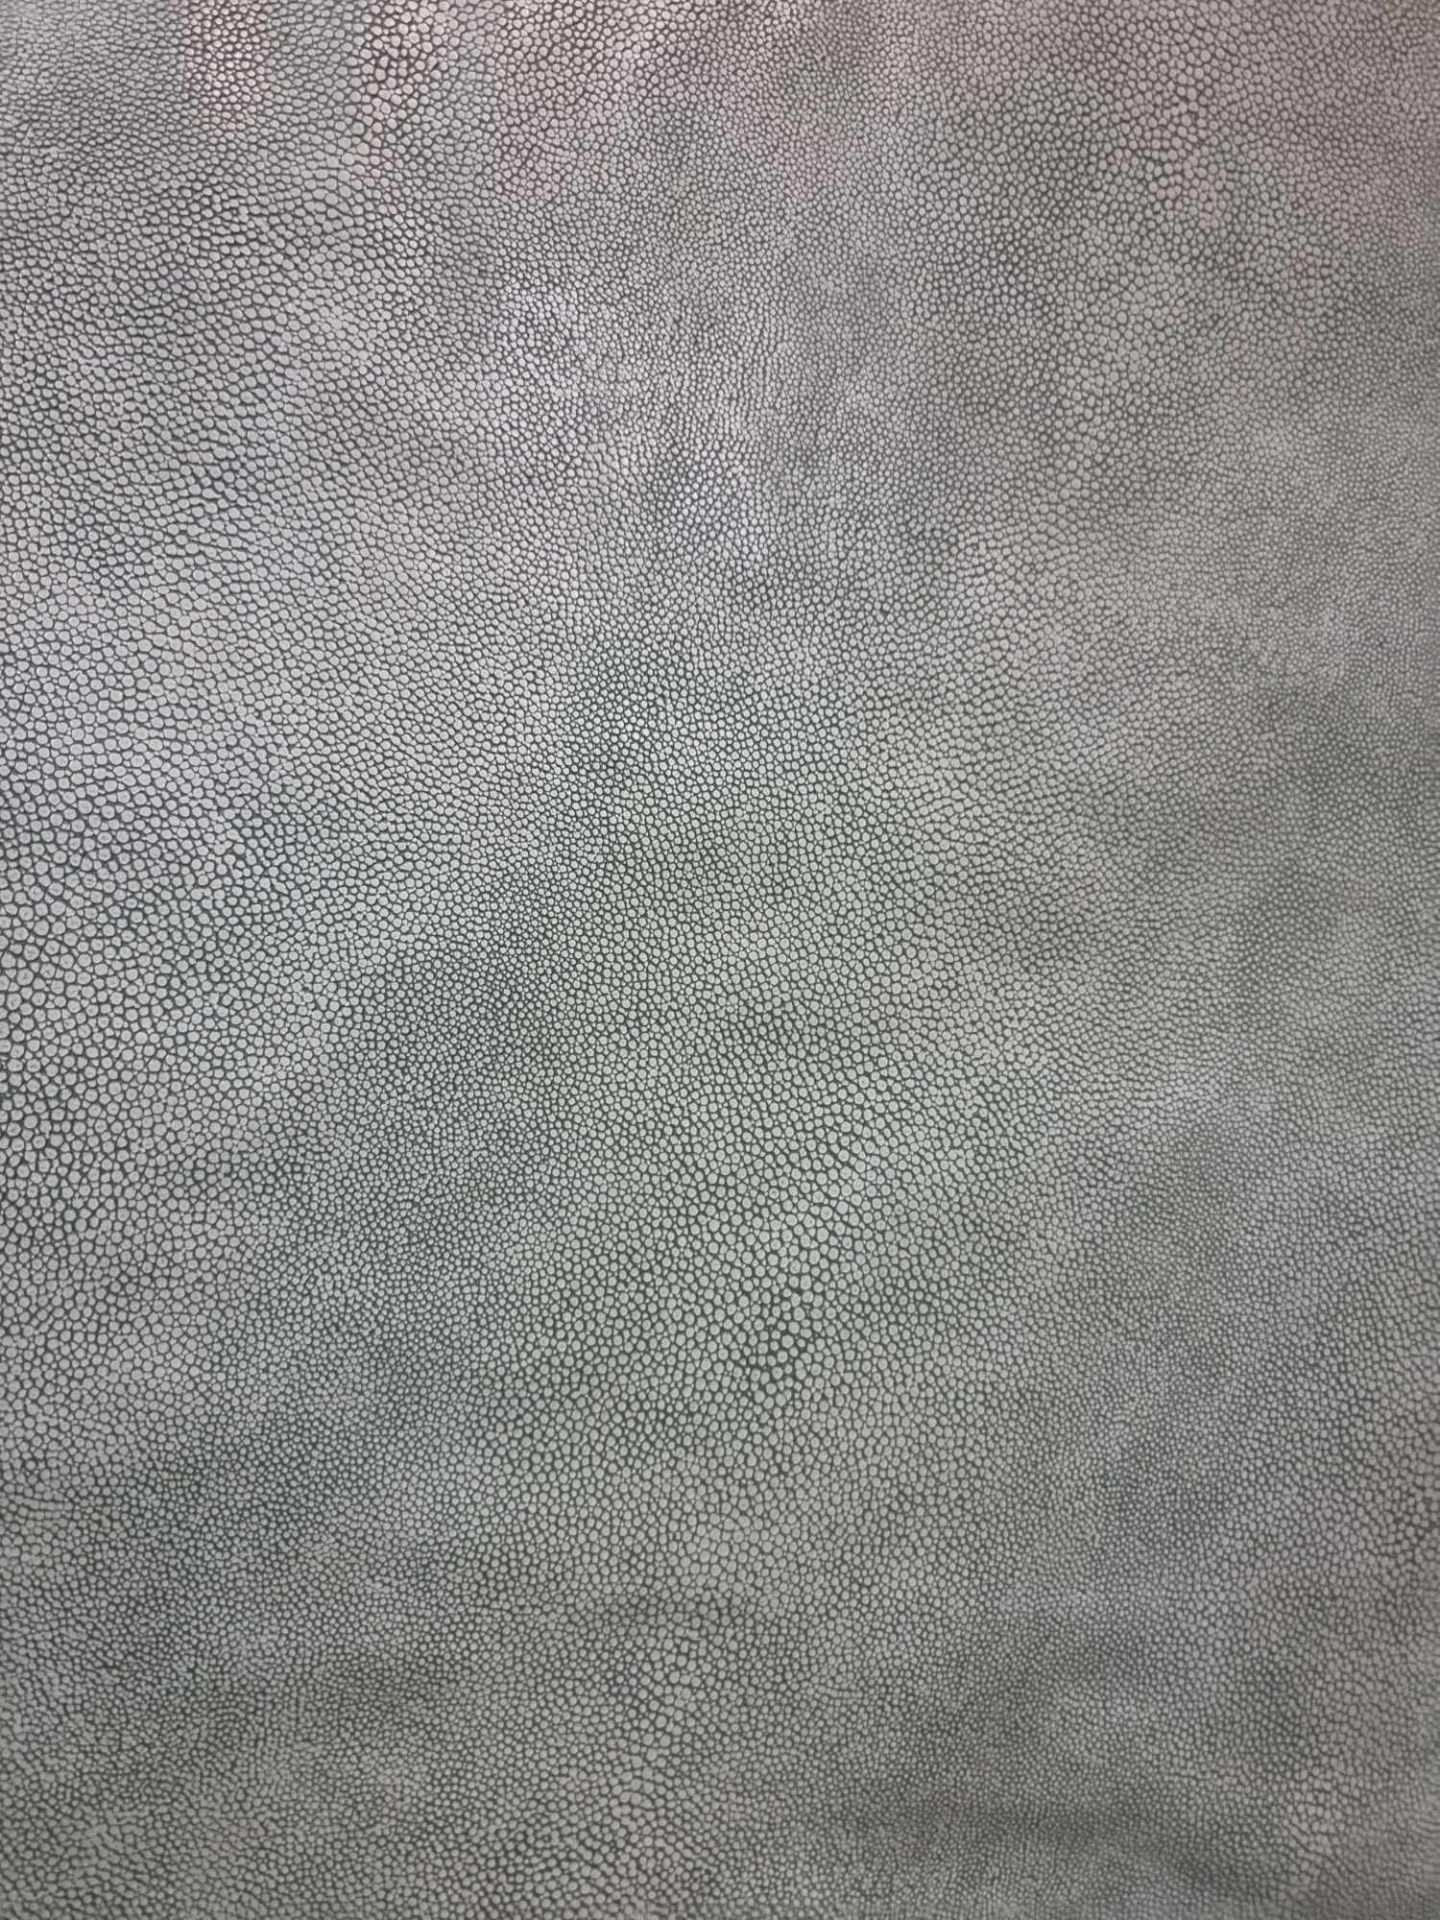 Sage Leather Hide approximately 3 6M2 2 x 1 8cm ( Hide No,232) - Bild 2 aus 2